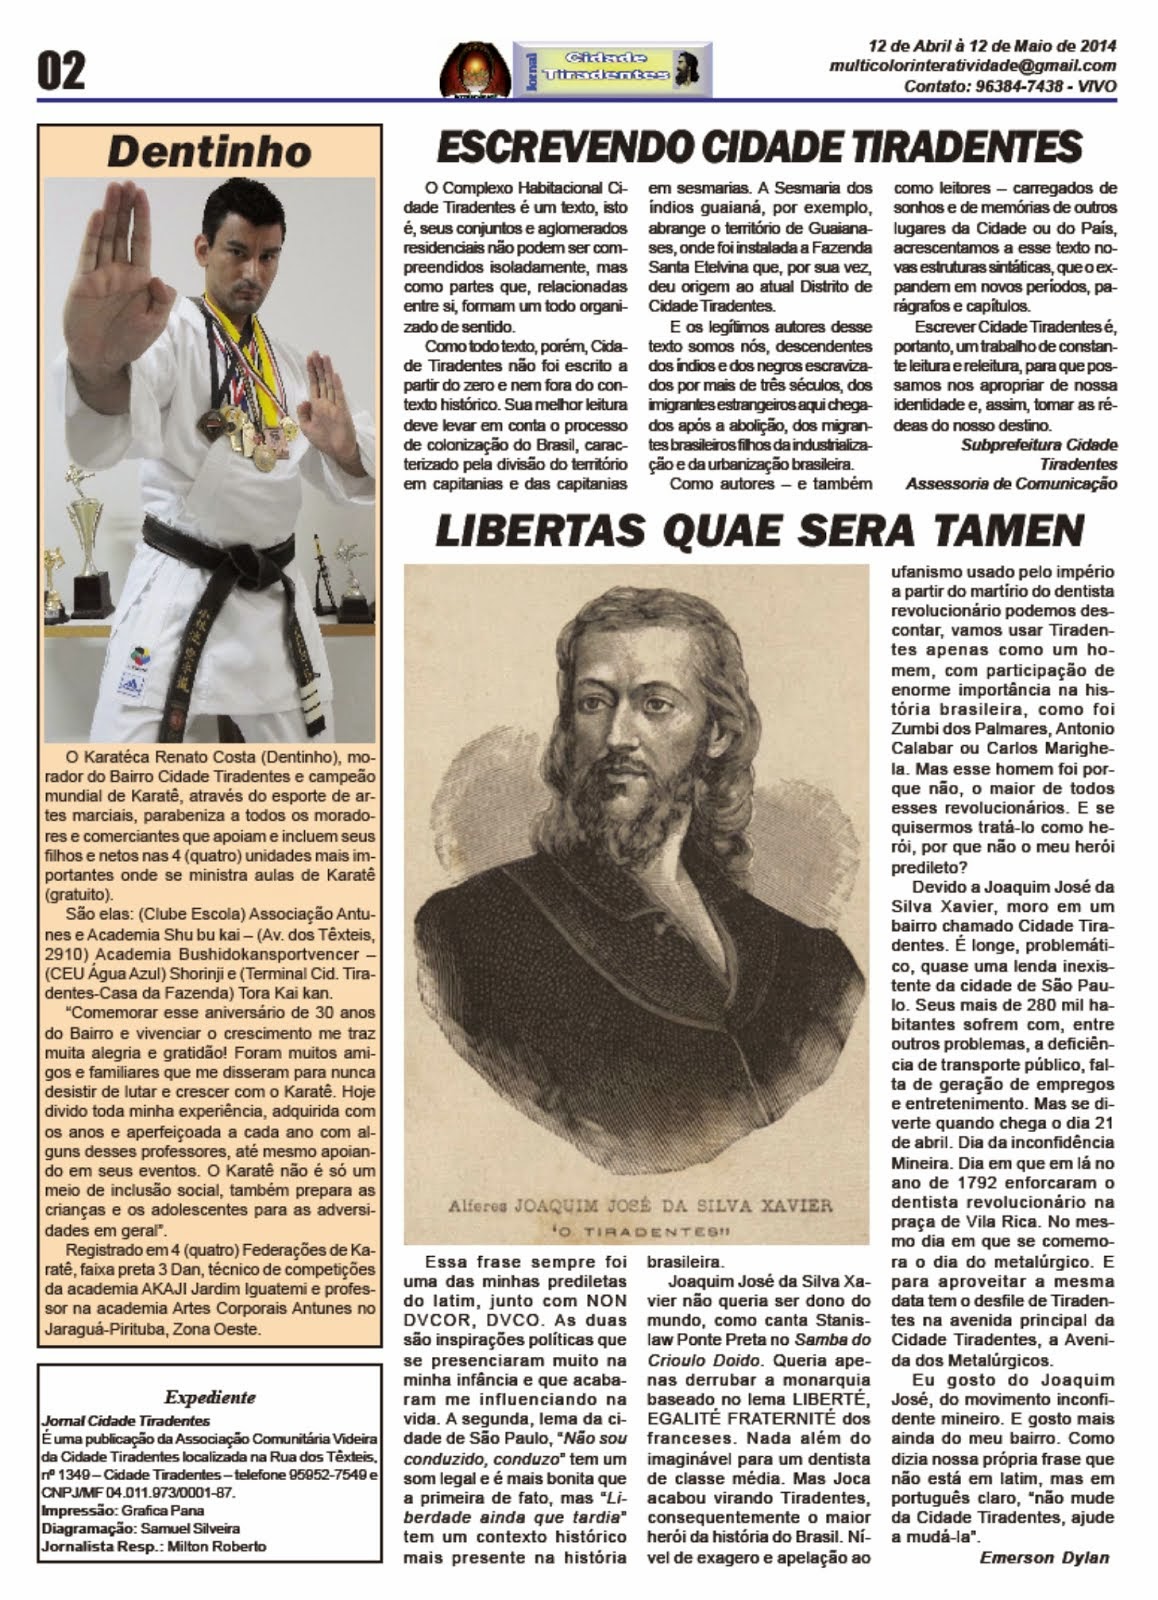 Jornal Cidade Tiradentes 54 - Edição nº 54